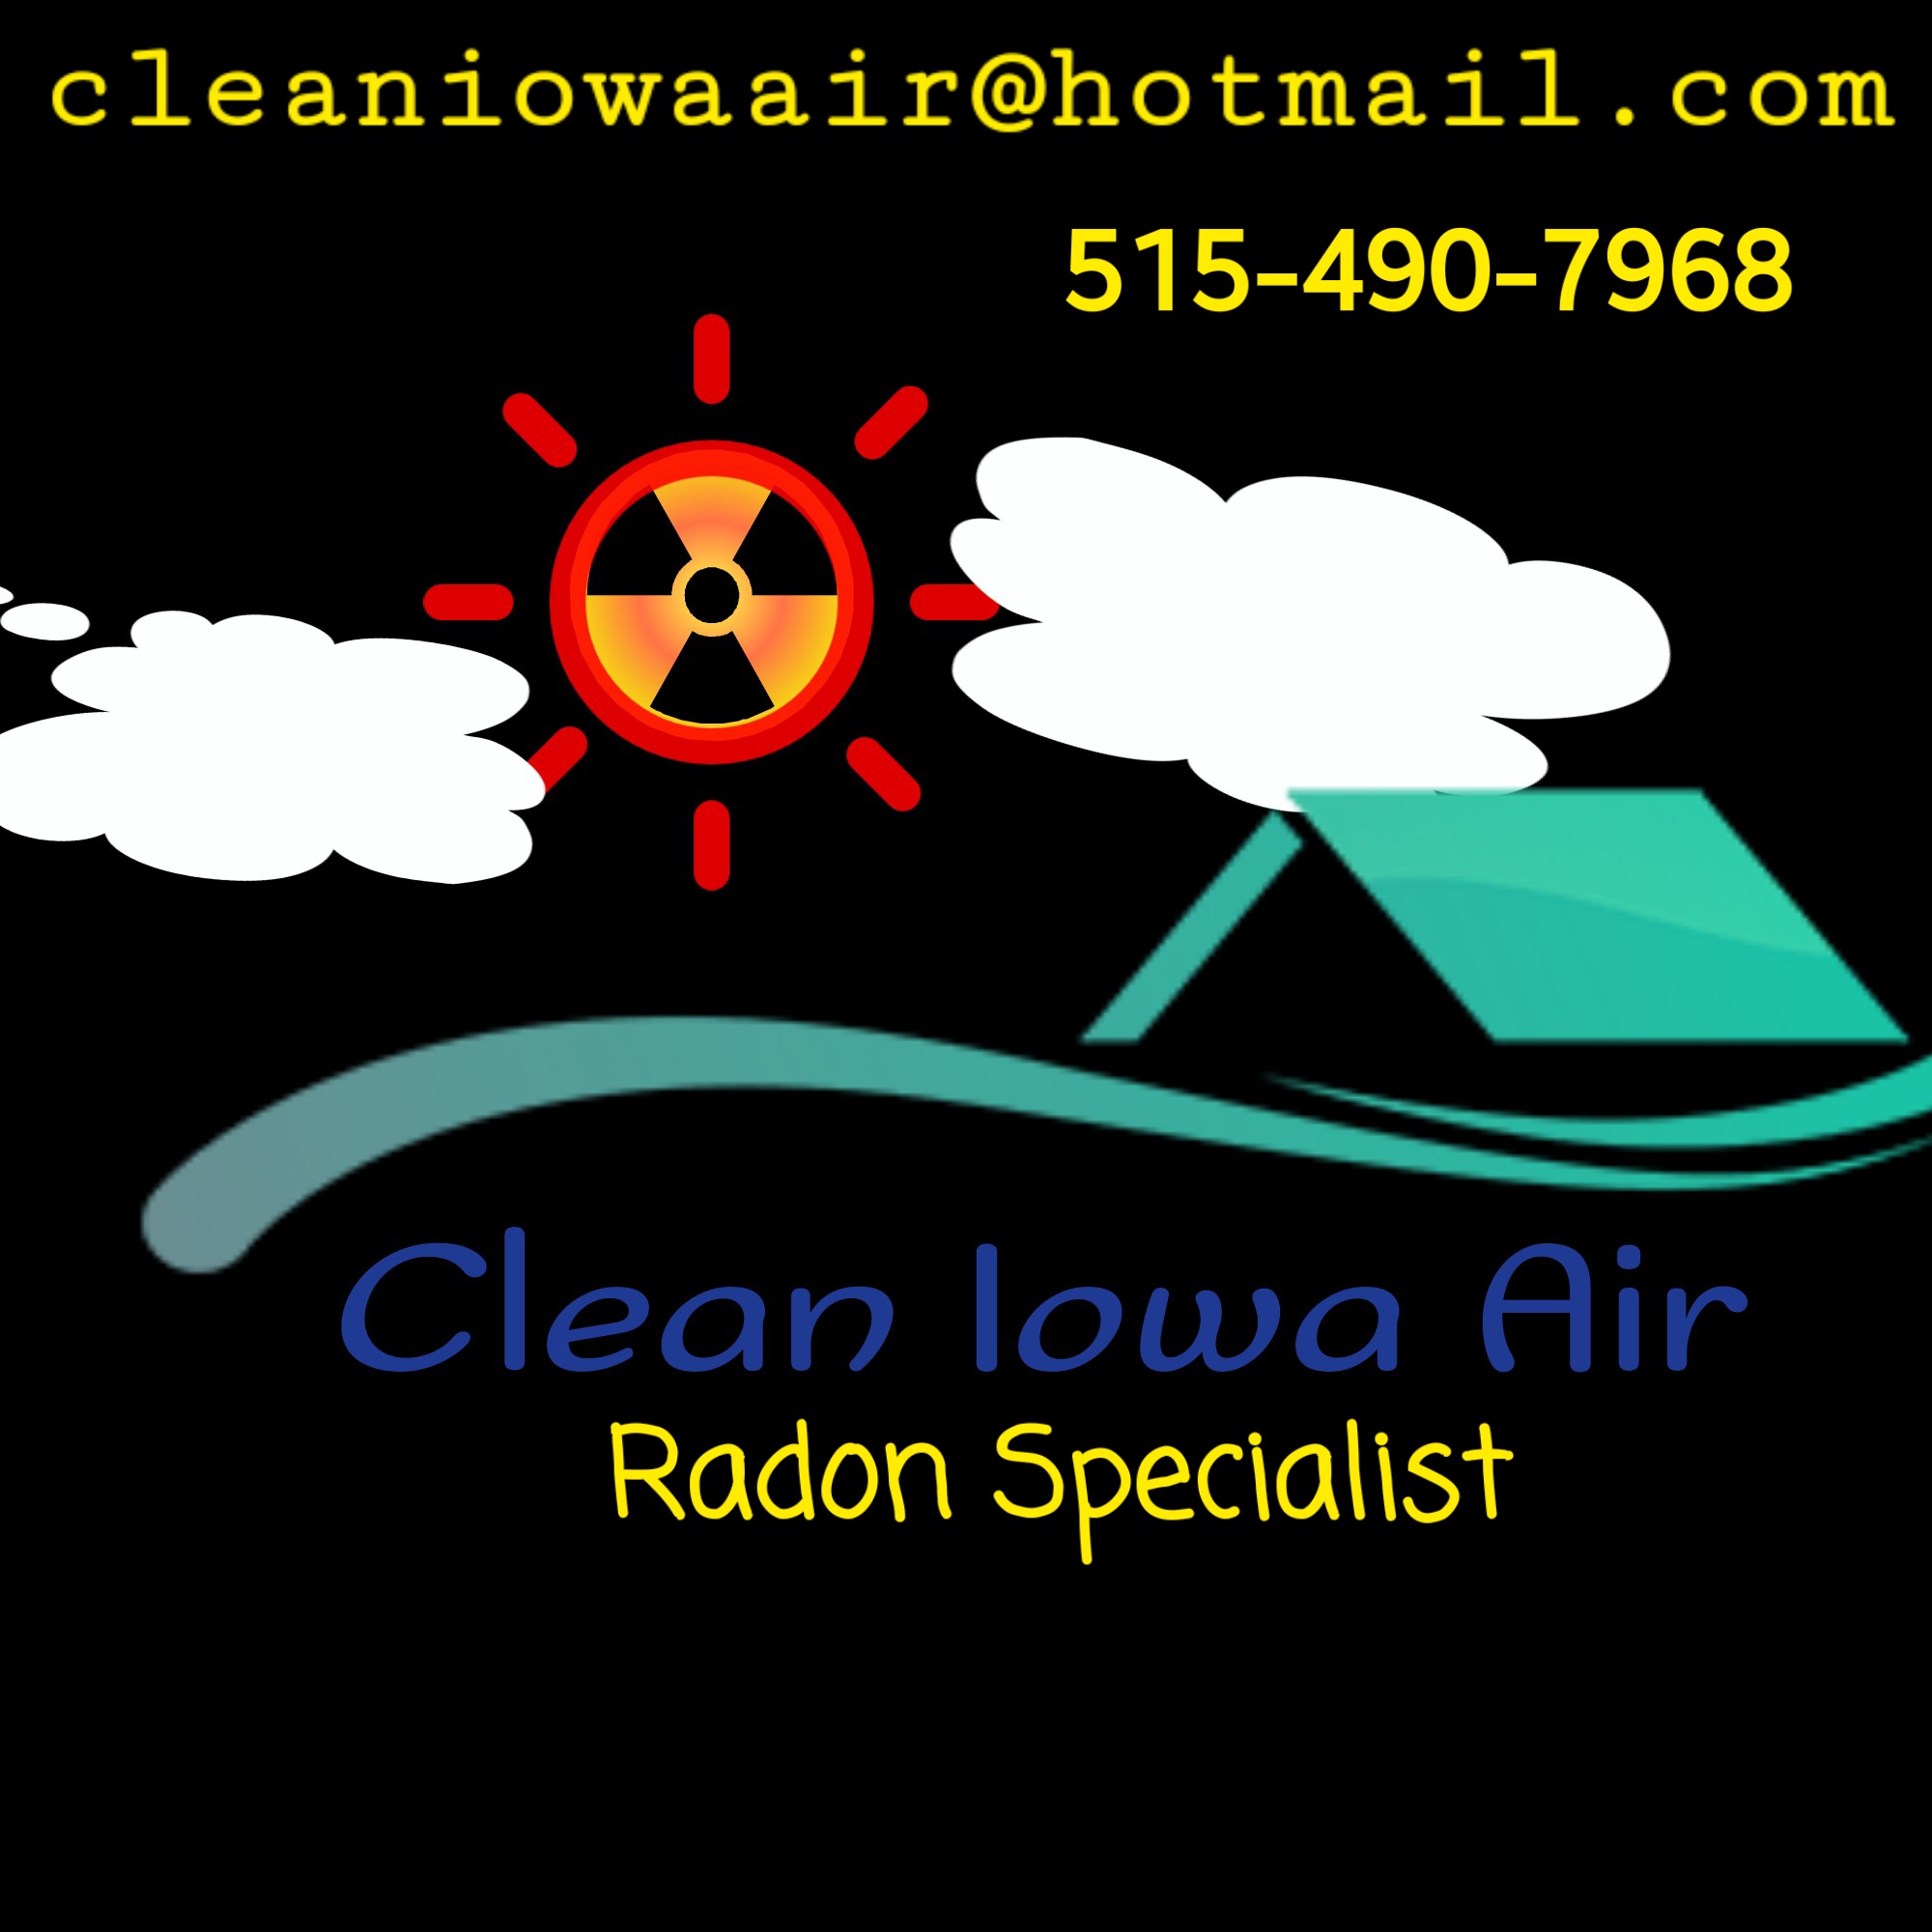 Clean Iowa Air Logo